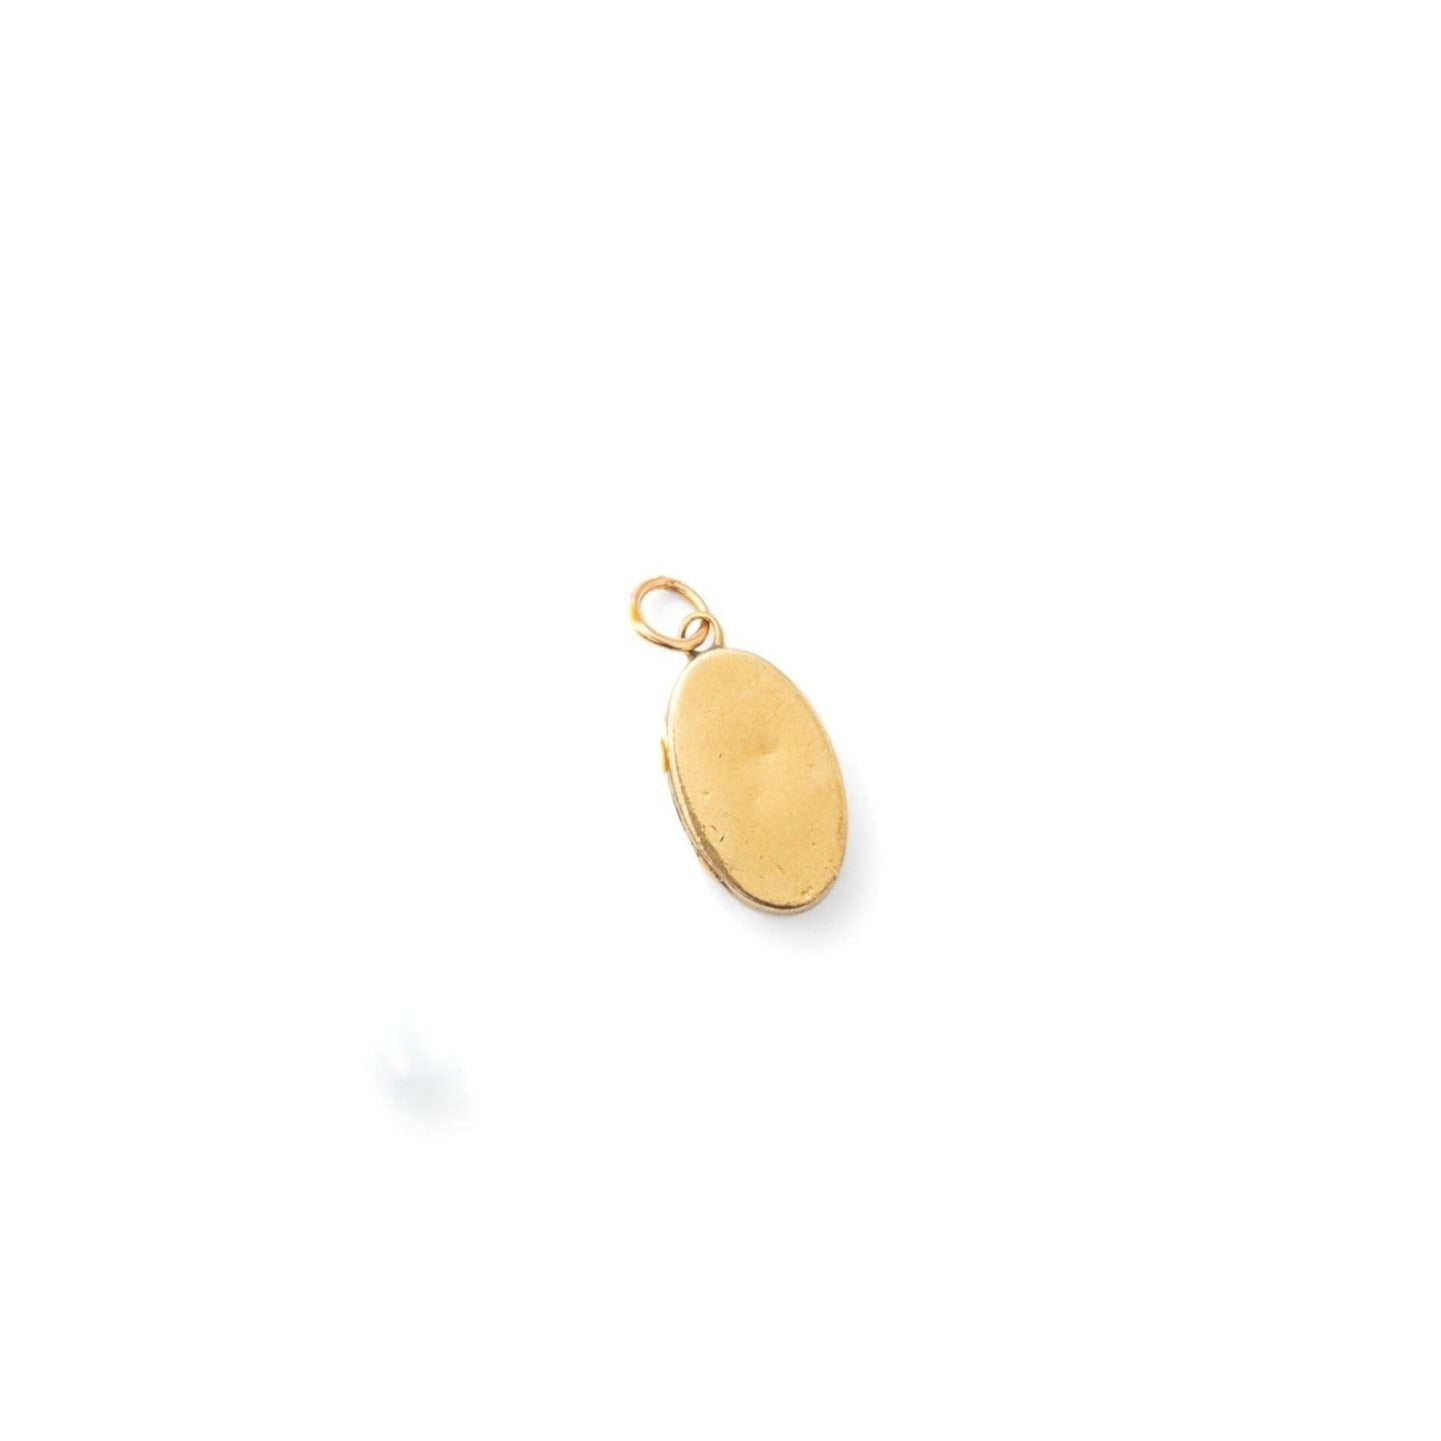 Miniature 10k Gold Oval Locket Charm